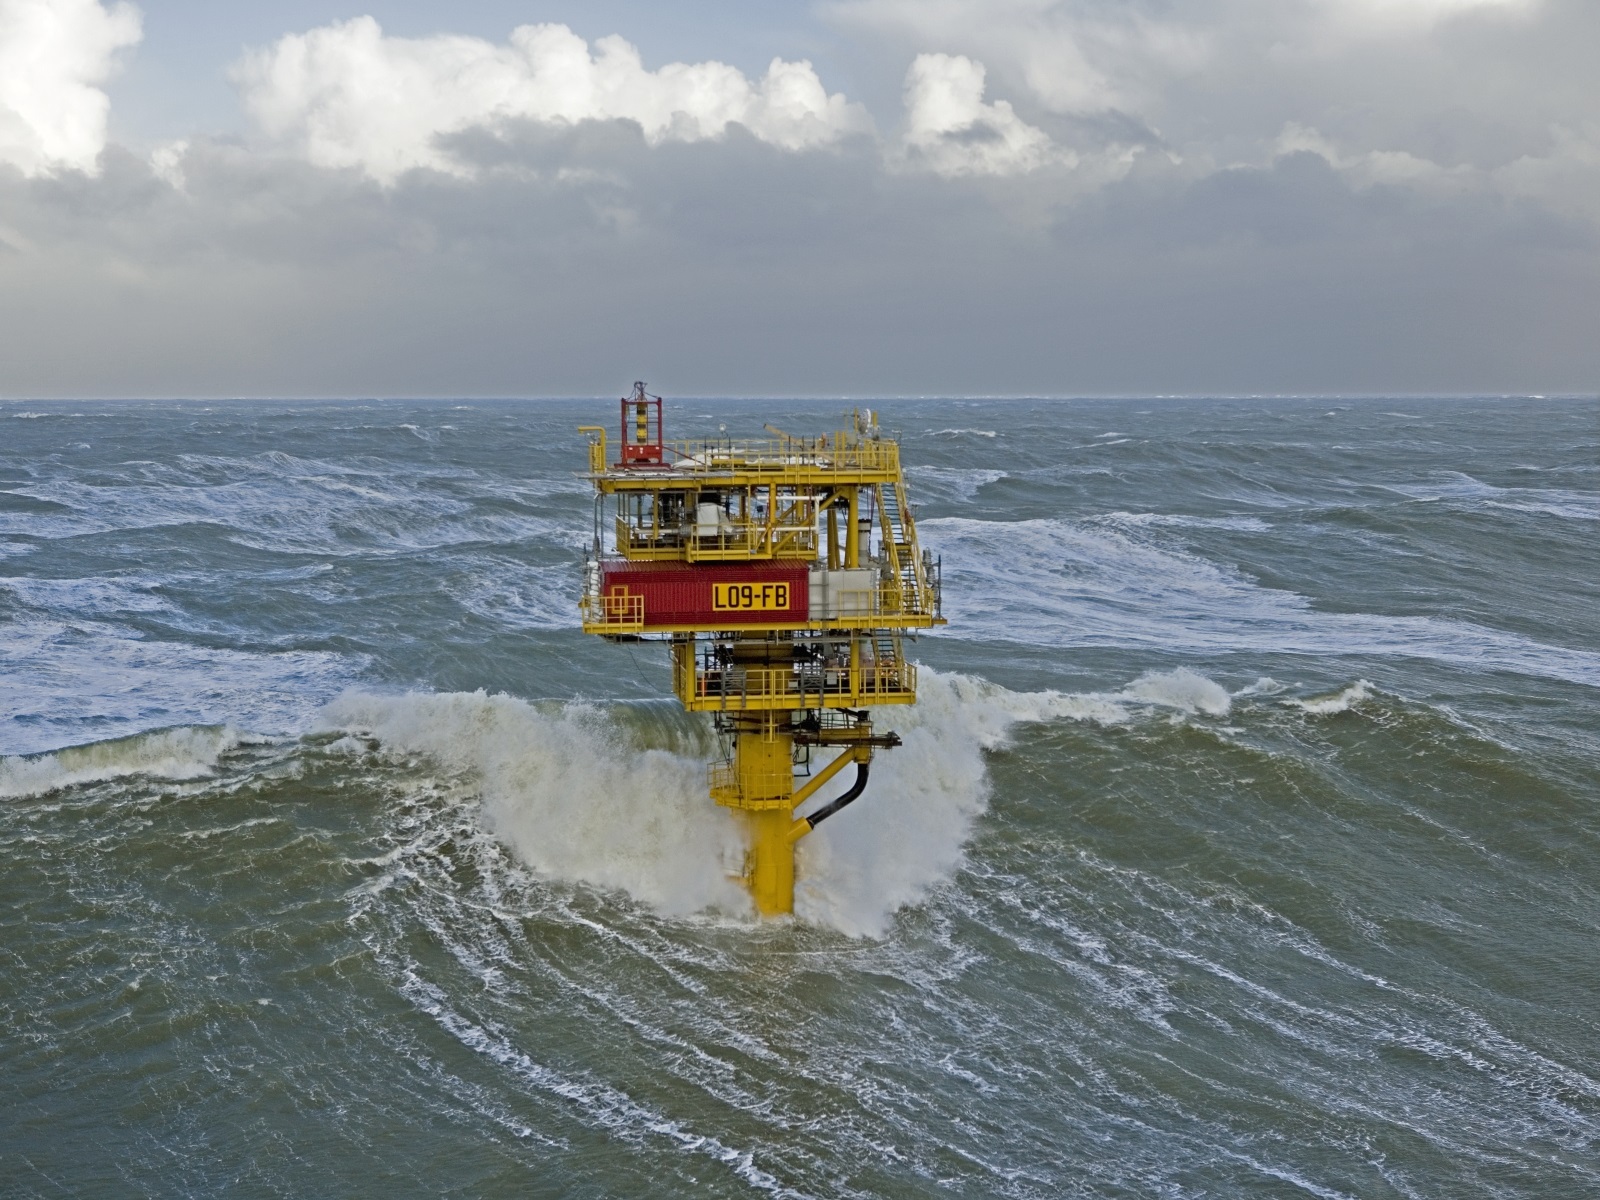 Unmanned North Sea monopile platform in operation - JB v Doesburg